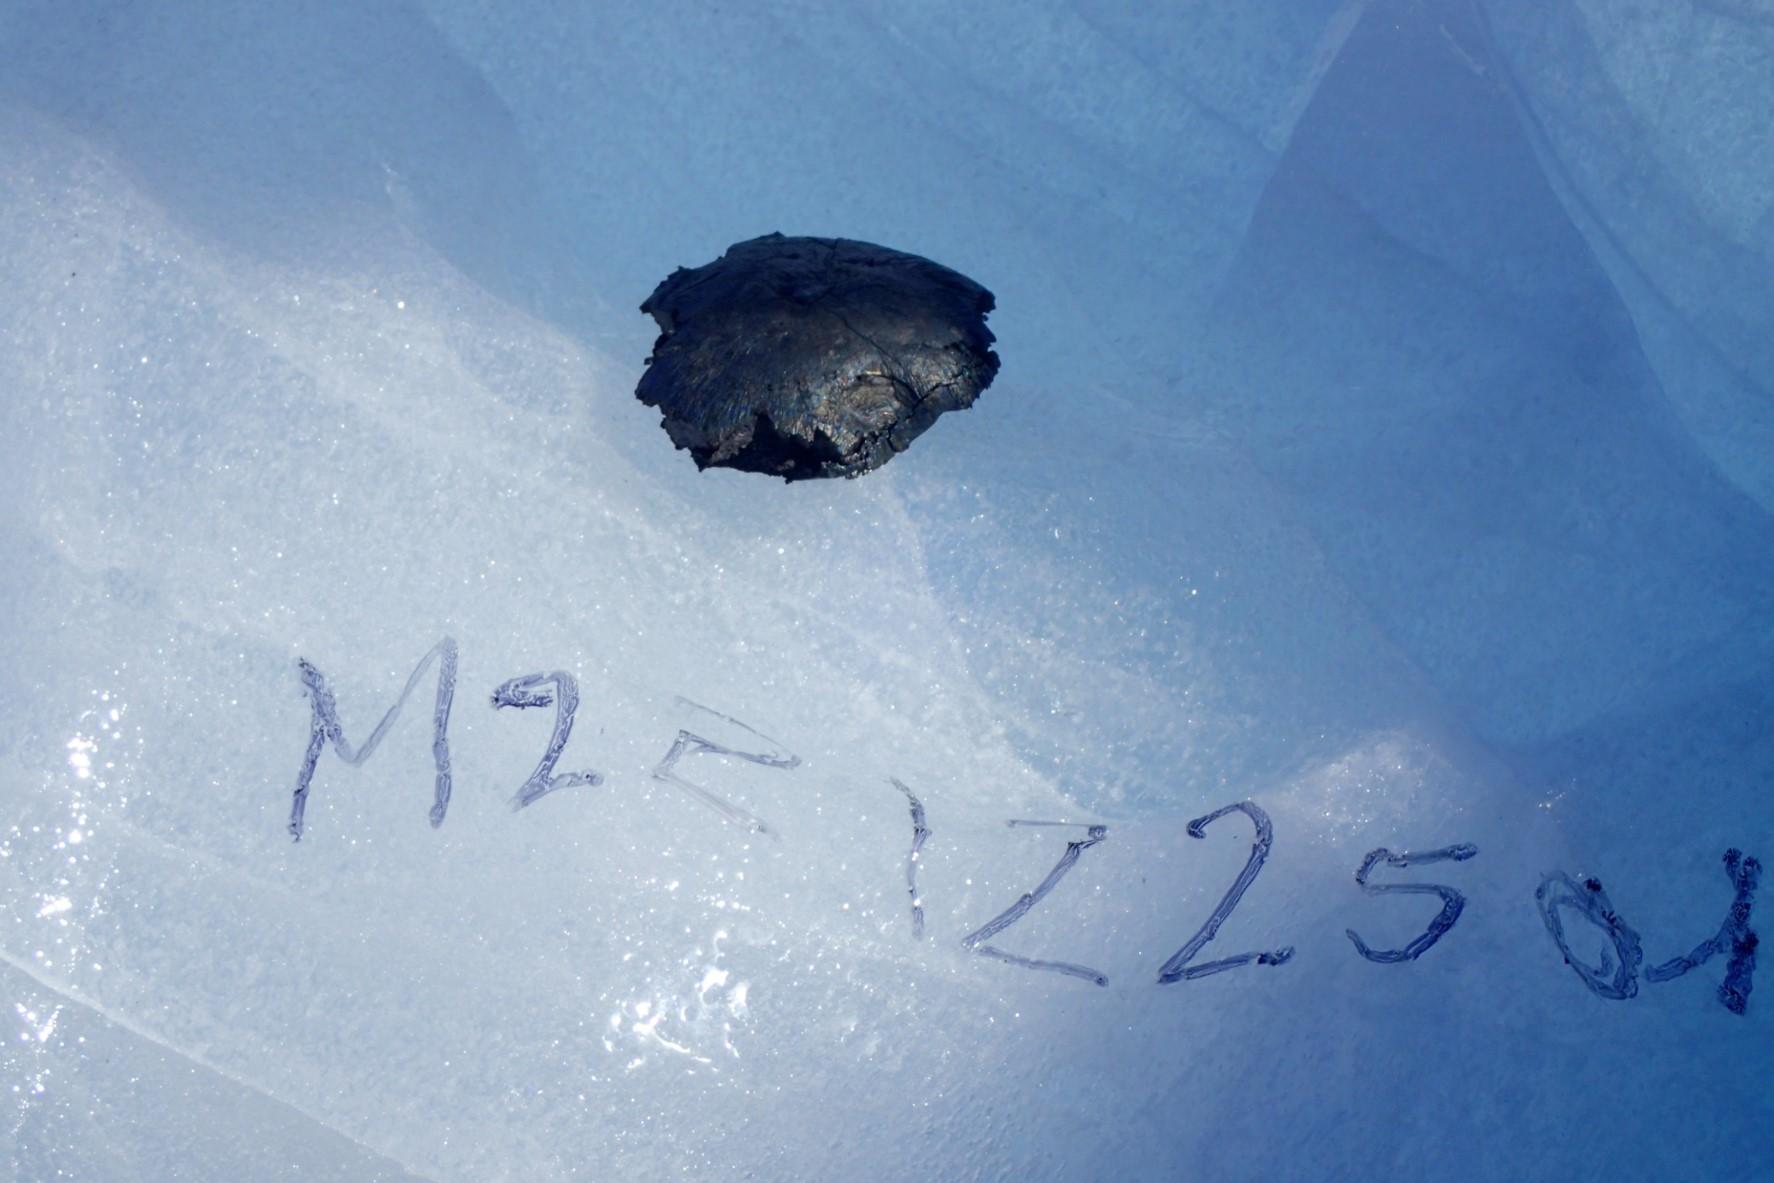 La première météorite trouvée pèse environ 150 grammes et possède une forme assez inhabituelle. L'équipe de recherche doit encore déterminer sa composition. [ETH Zürich - Maria Schönbächler]